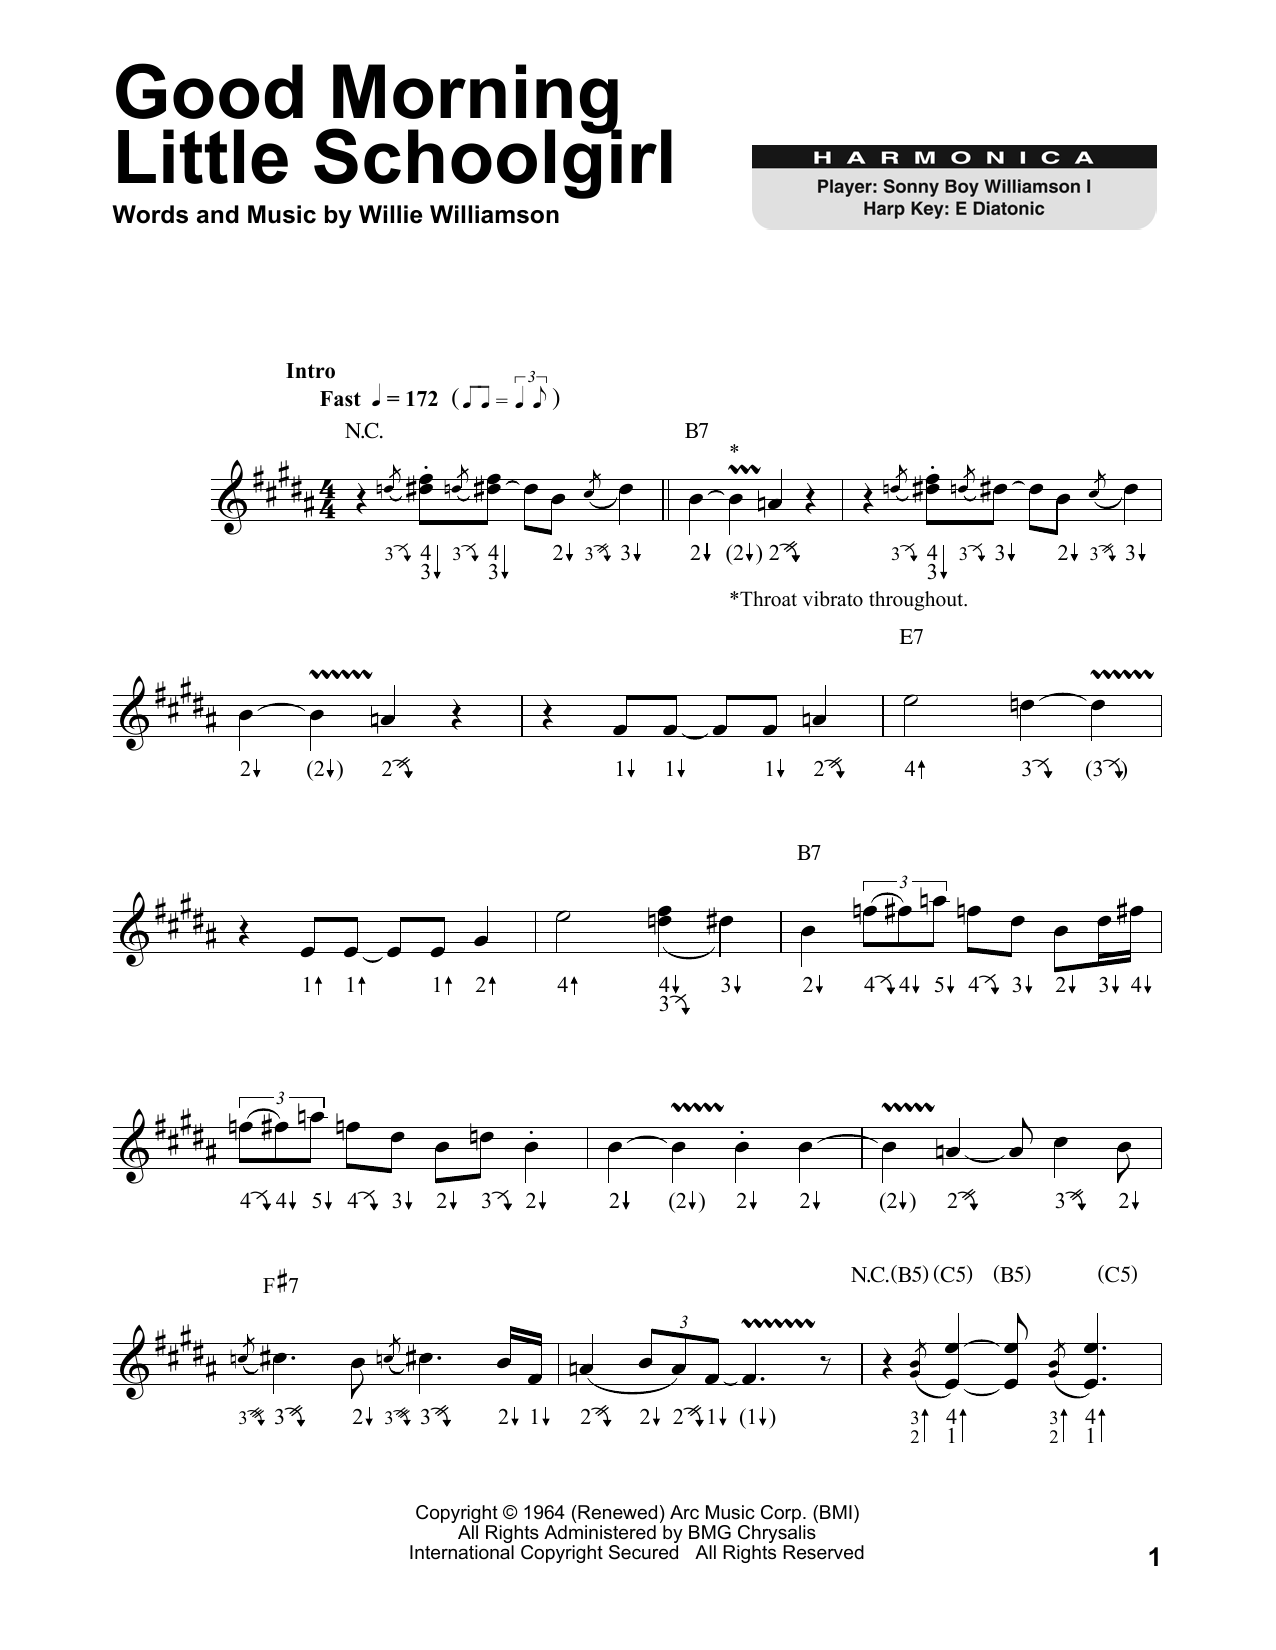 Sonny Boy Williamson Good Morning Little Schoolgirl sheet music notes printable PDF score